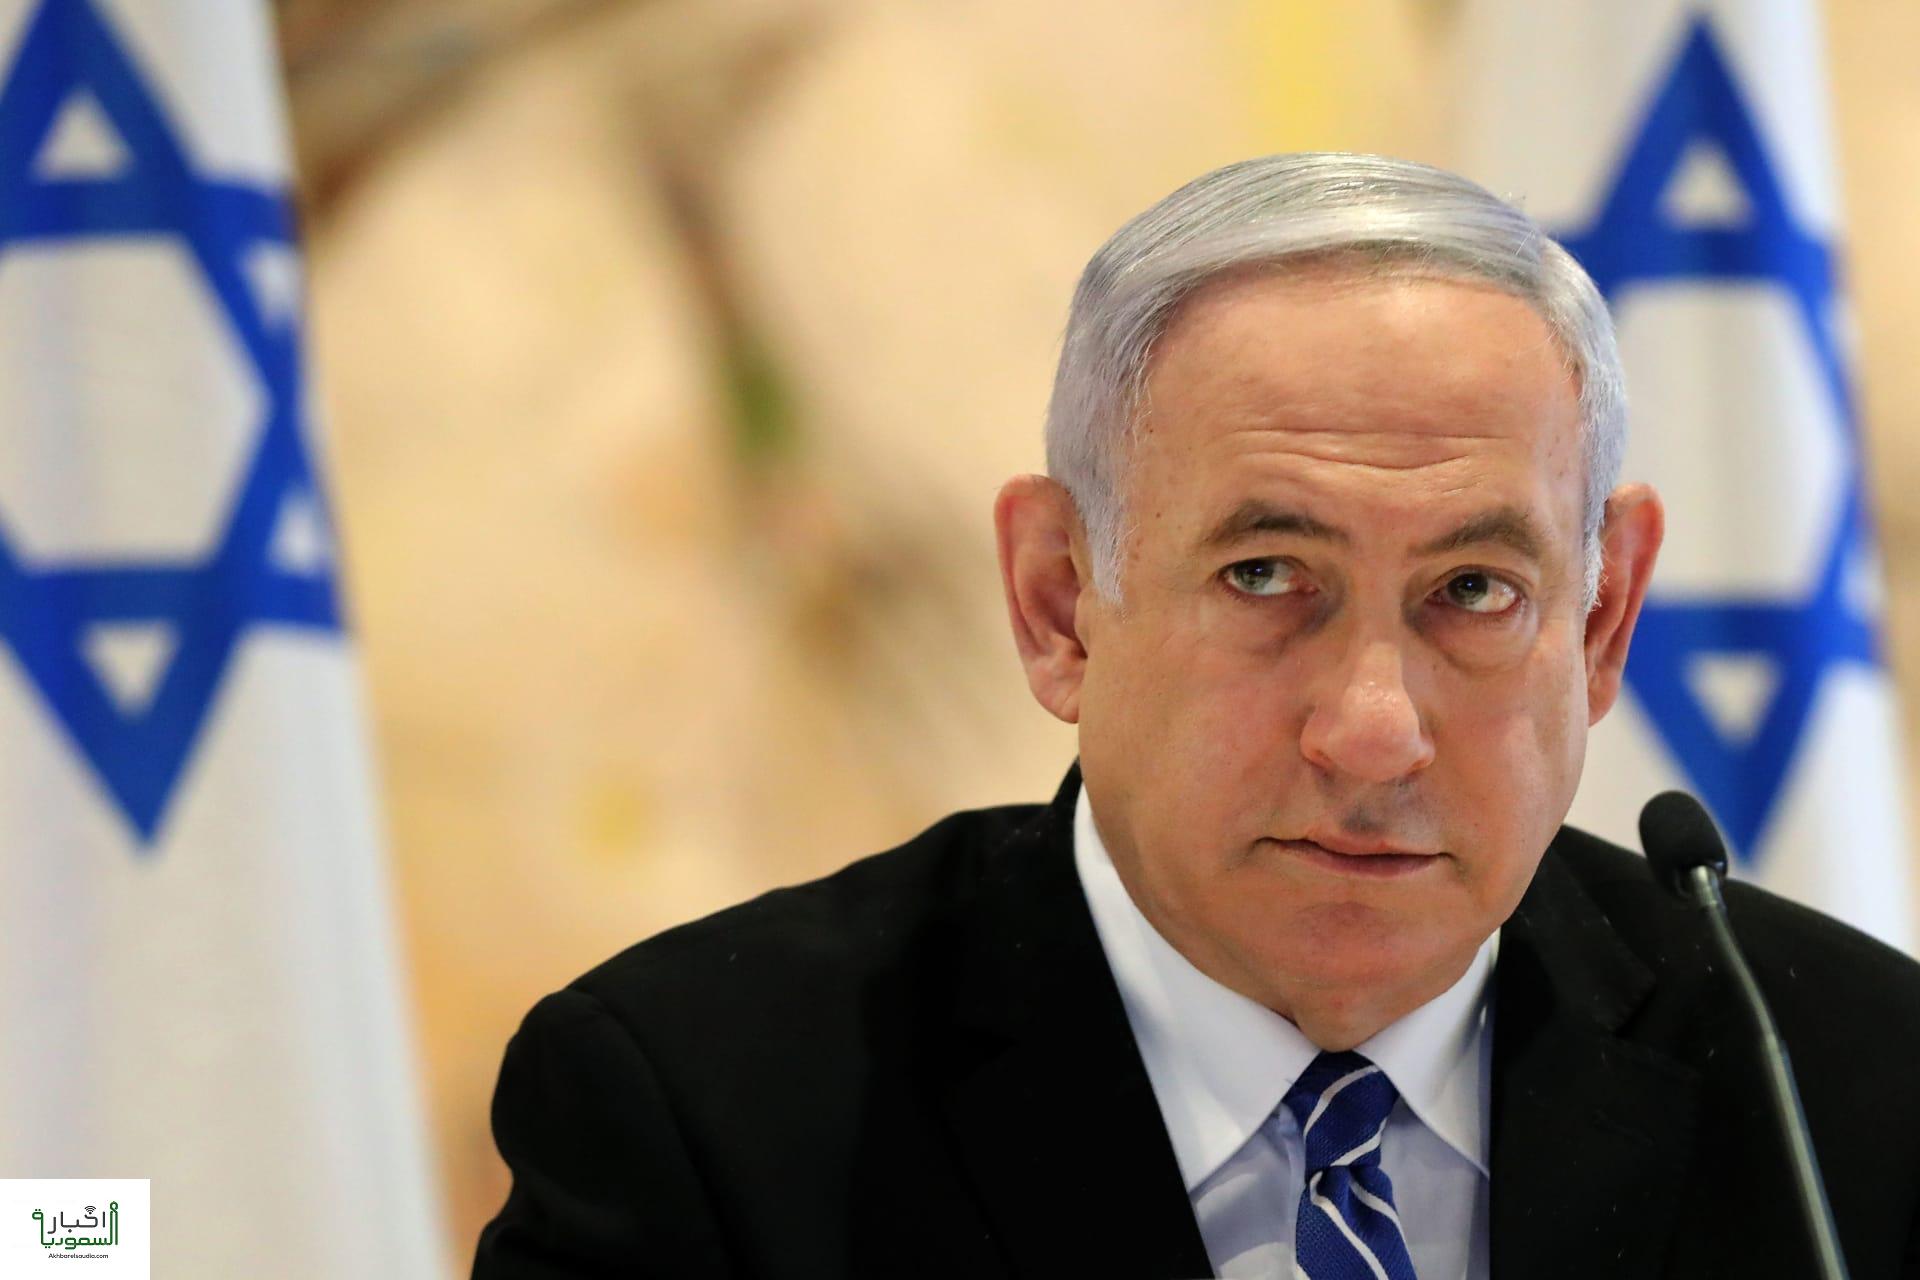 رئيس الوزراء الإسرائيلي يتوصل لإتفاق ائتلافي حول تشكيل الحكومة الجديدة مع حزب القوة اليهودية